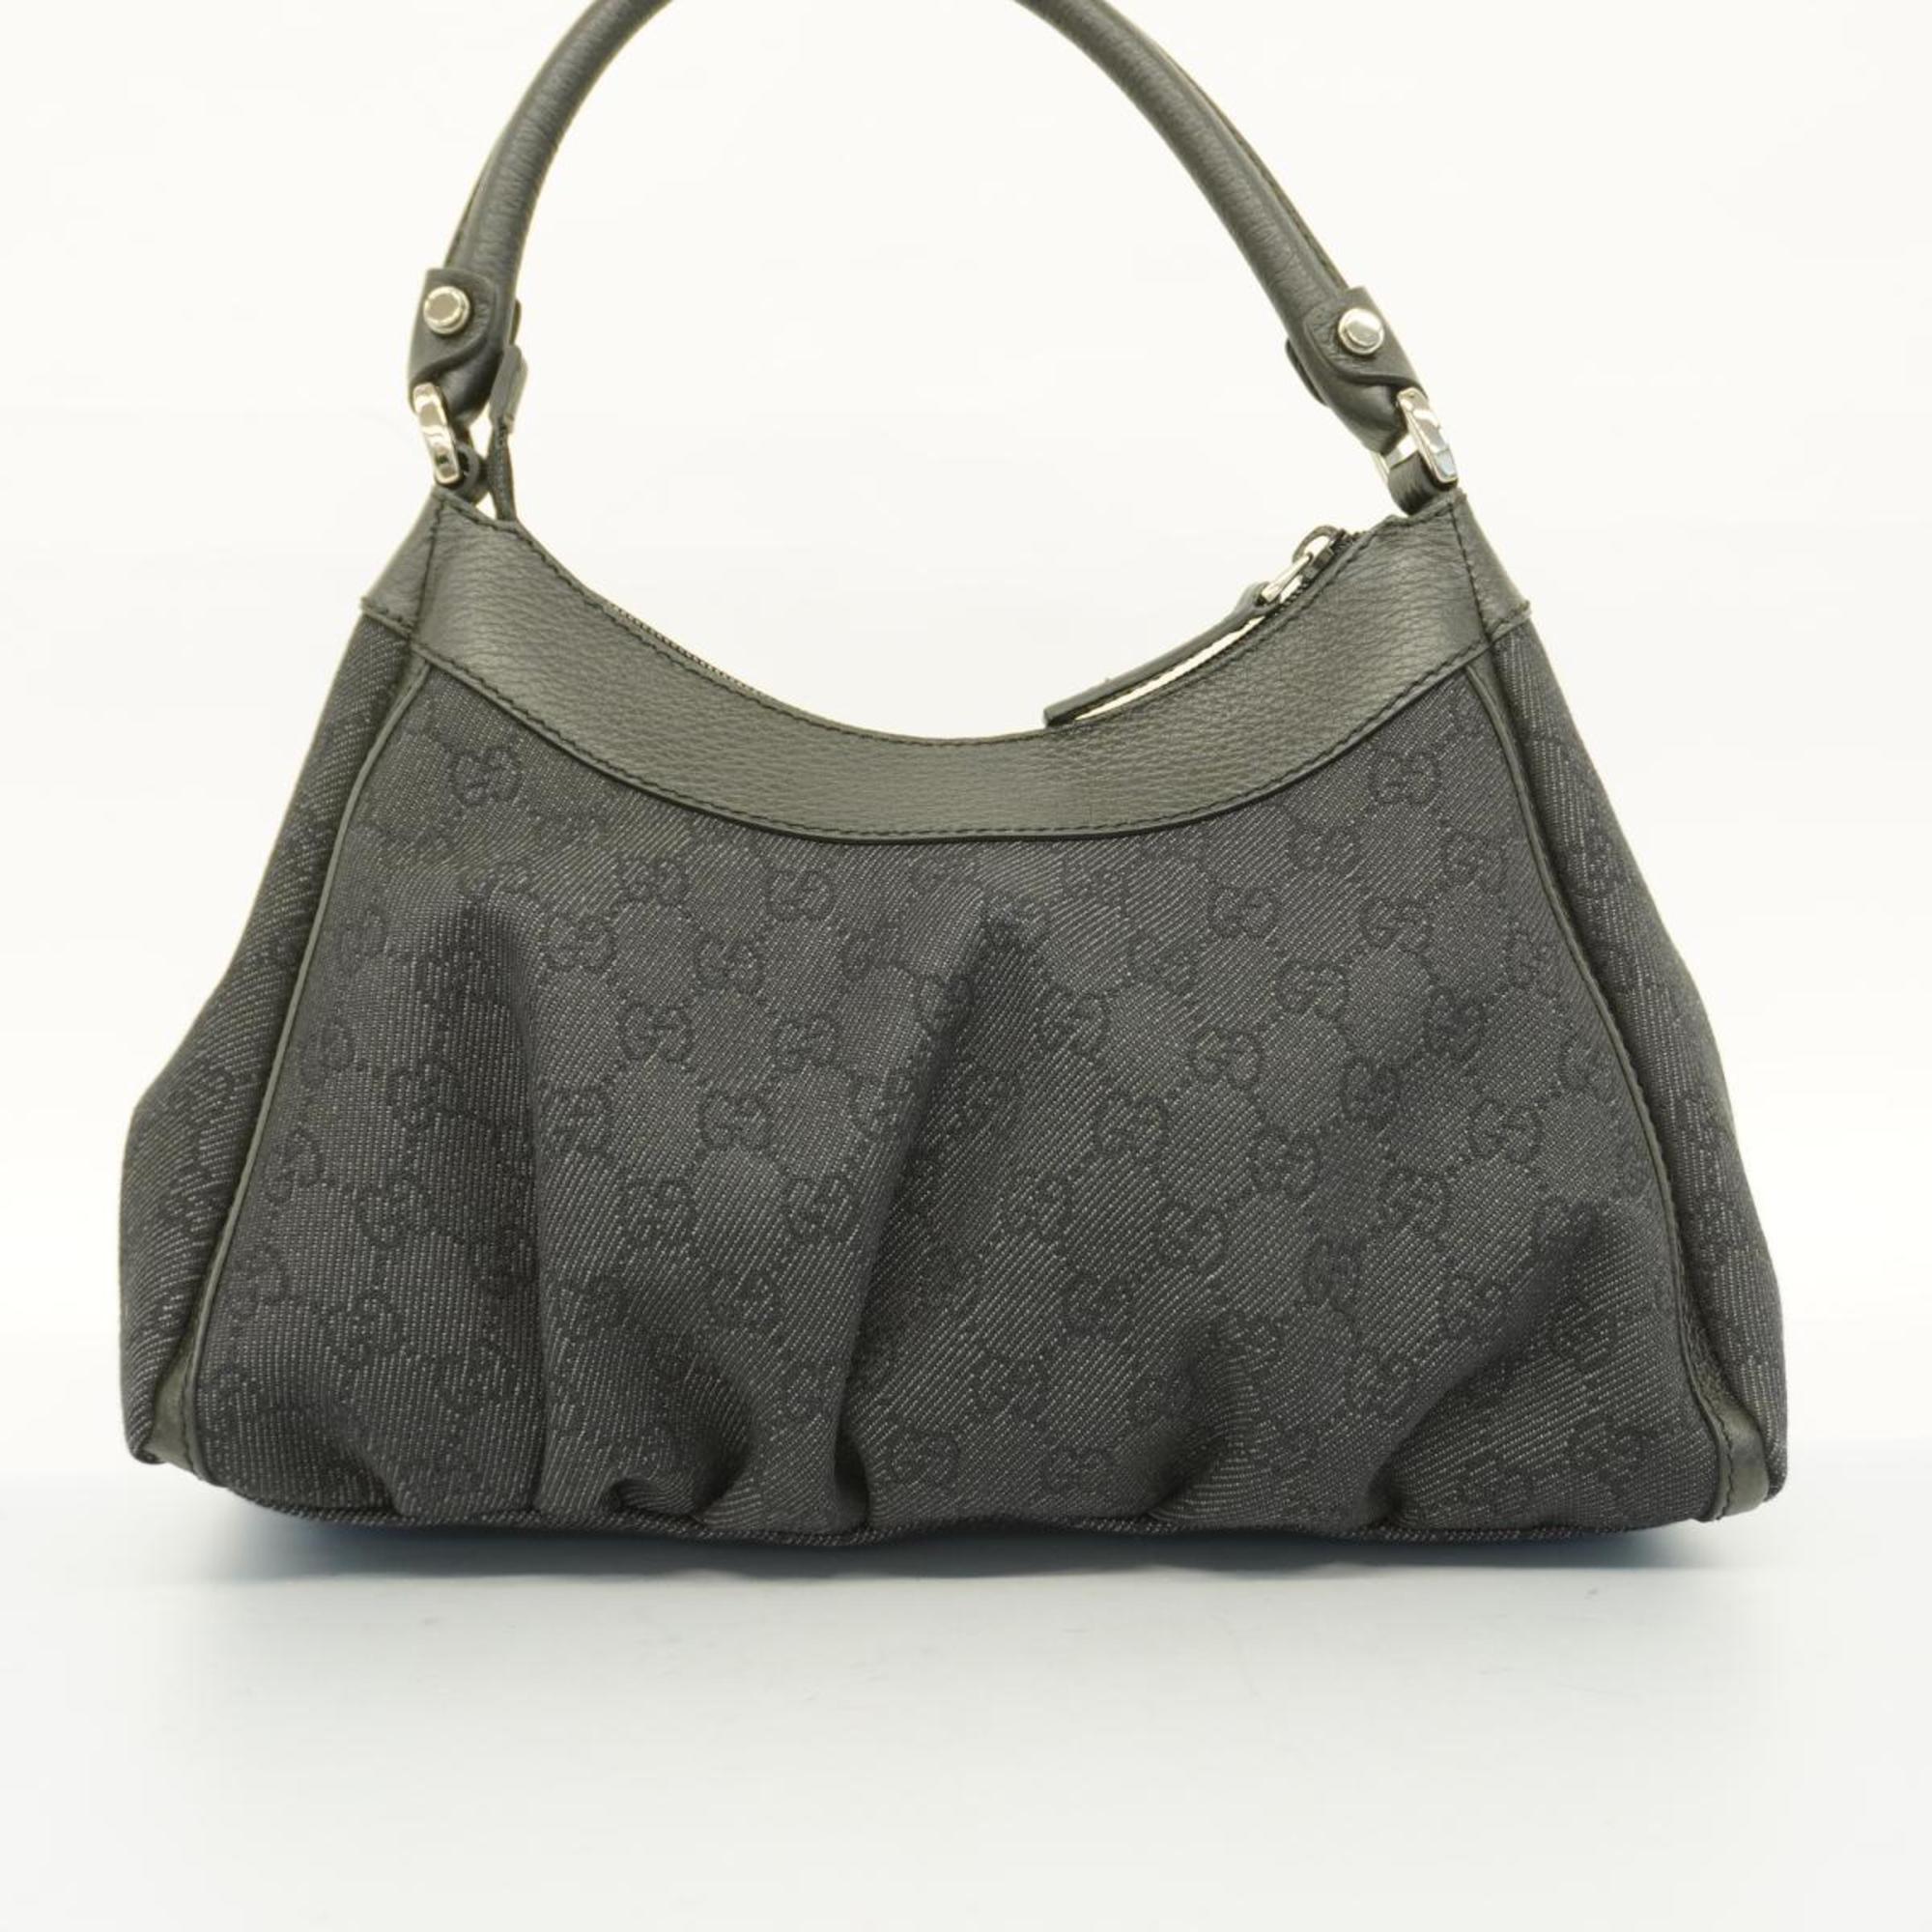 Gucci handbag Abby 265692 denim black ladies